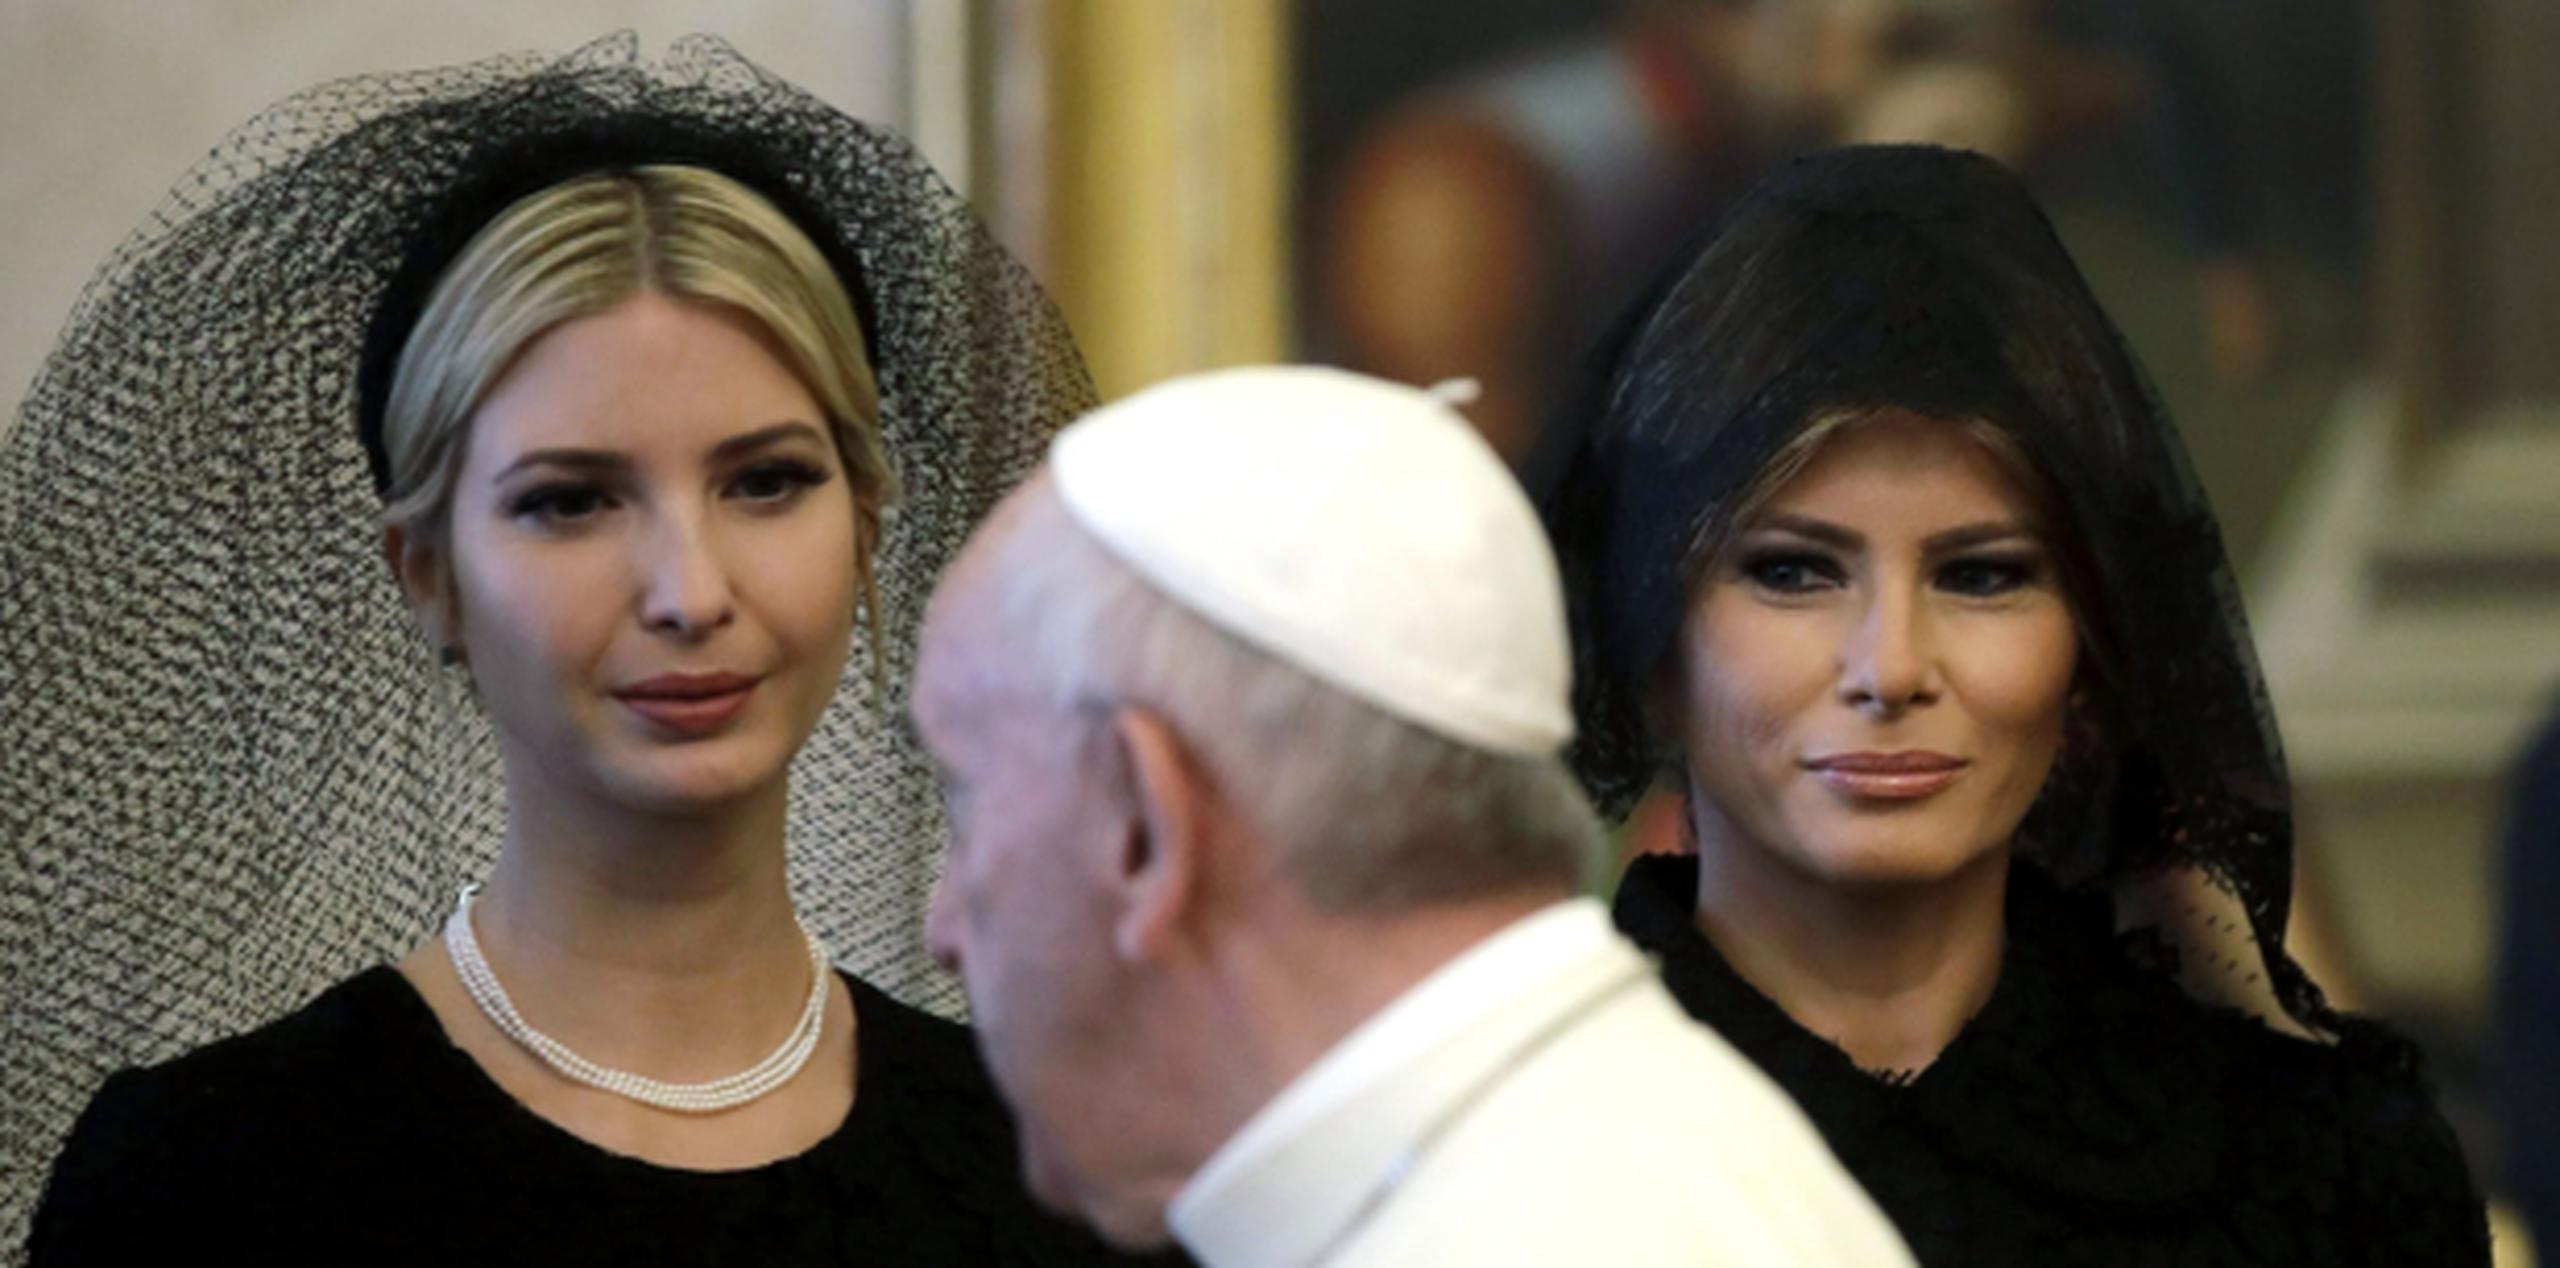 En una audiencia con el papa, solo pueden ir vestidas de blanco las reinas, las reinas consortes o princesas católicas. (EFE / Alessandra Tarantino / Pool)